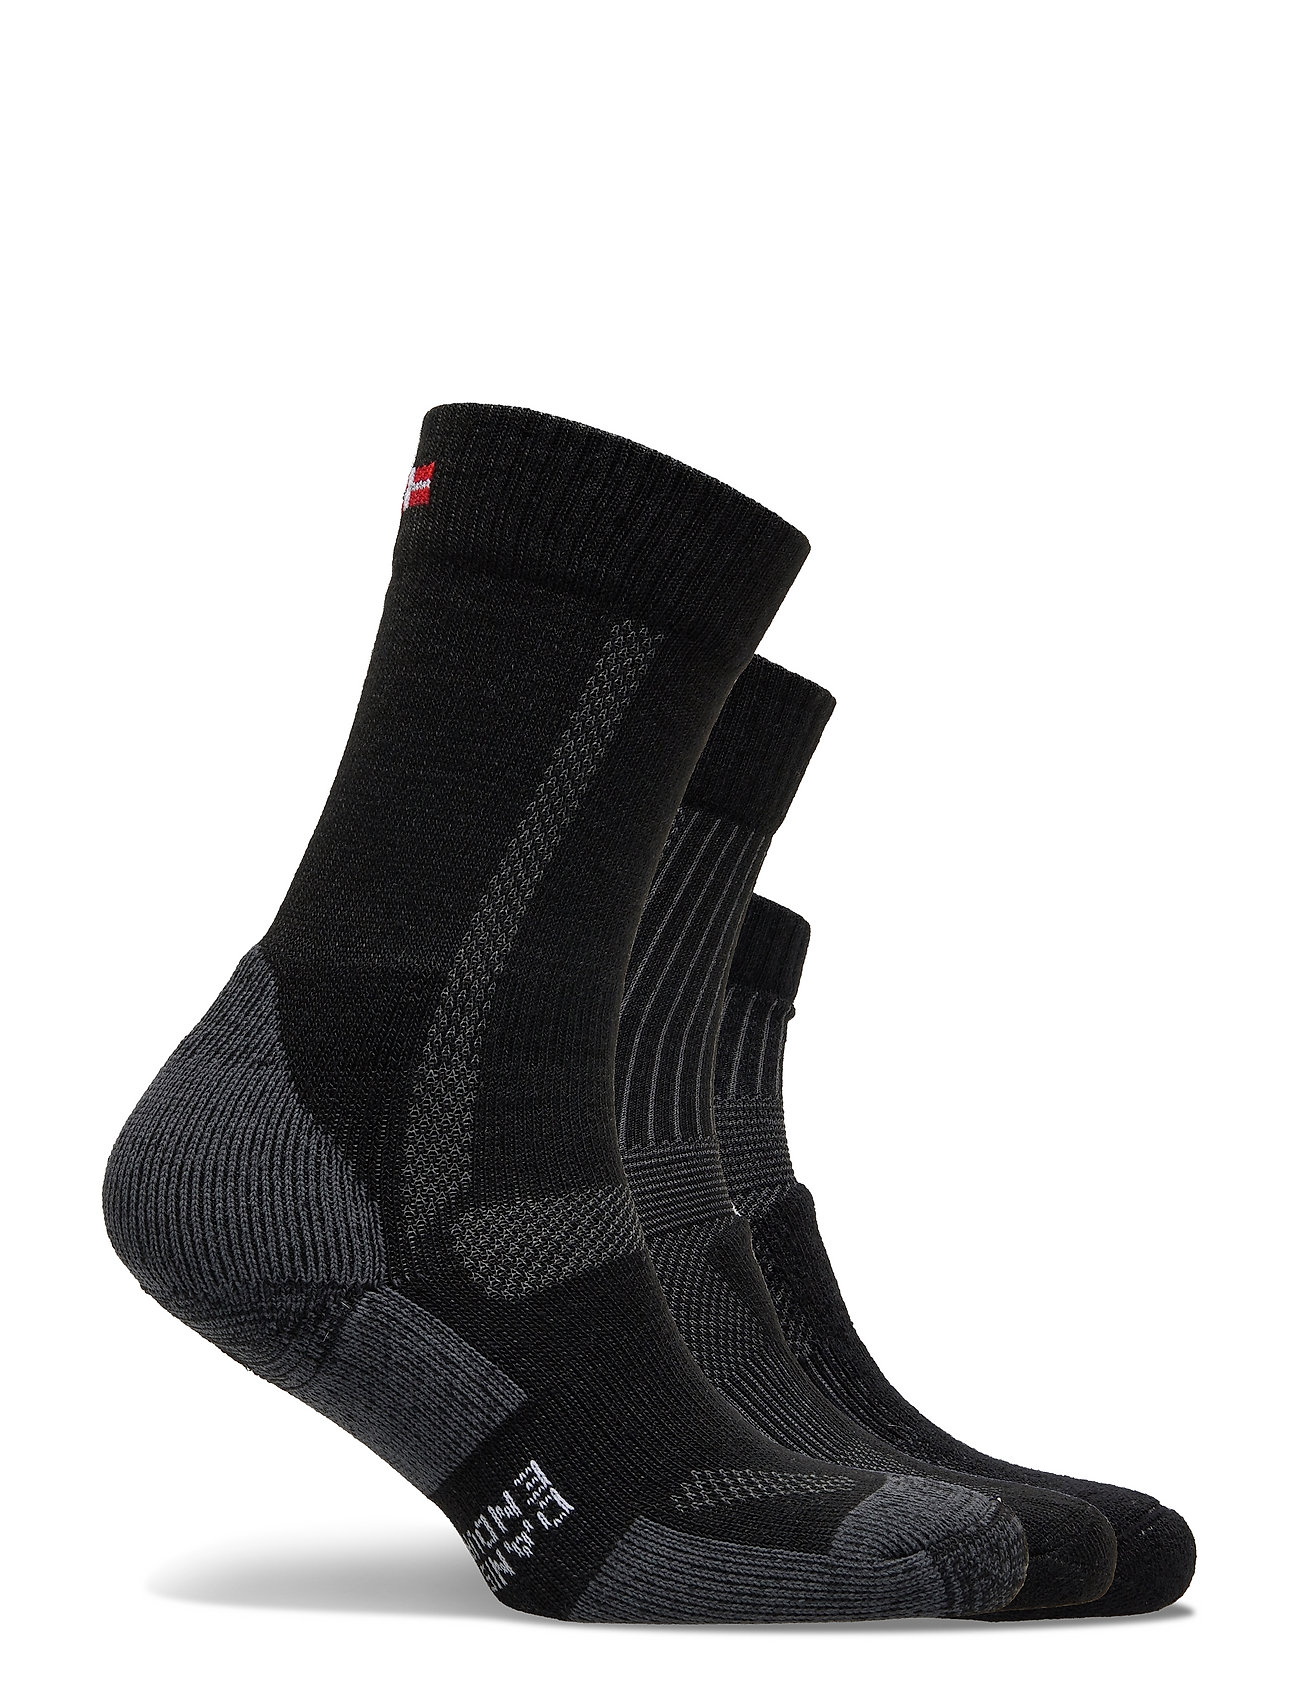 Danish Endurance - Hiking Combo Socks 3 Pack - lowest prices - black (hiking classic black, light black, low-cut black) - 1